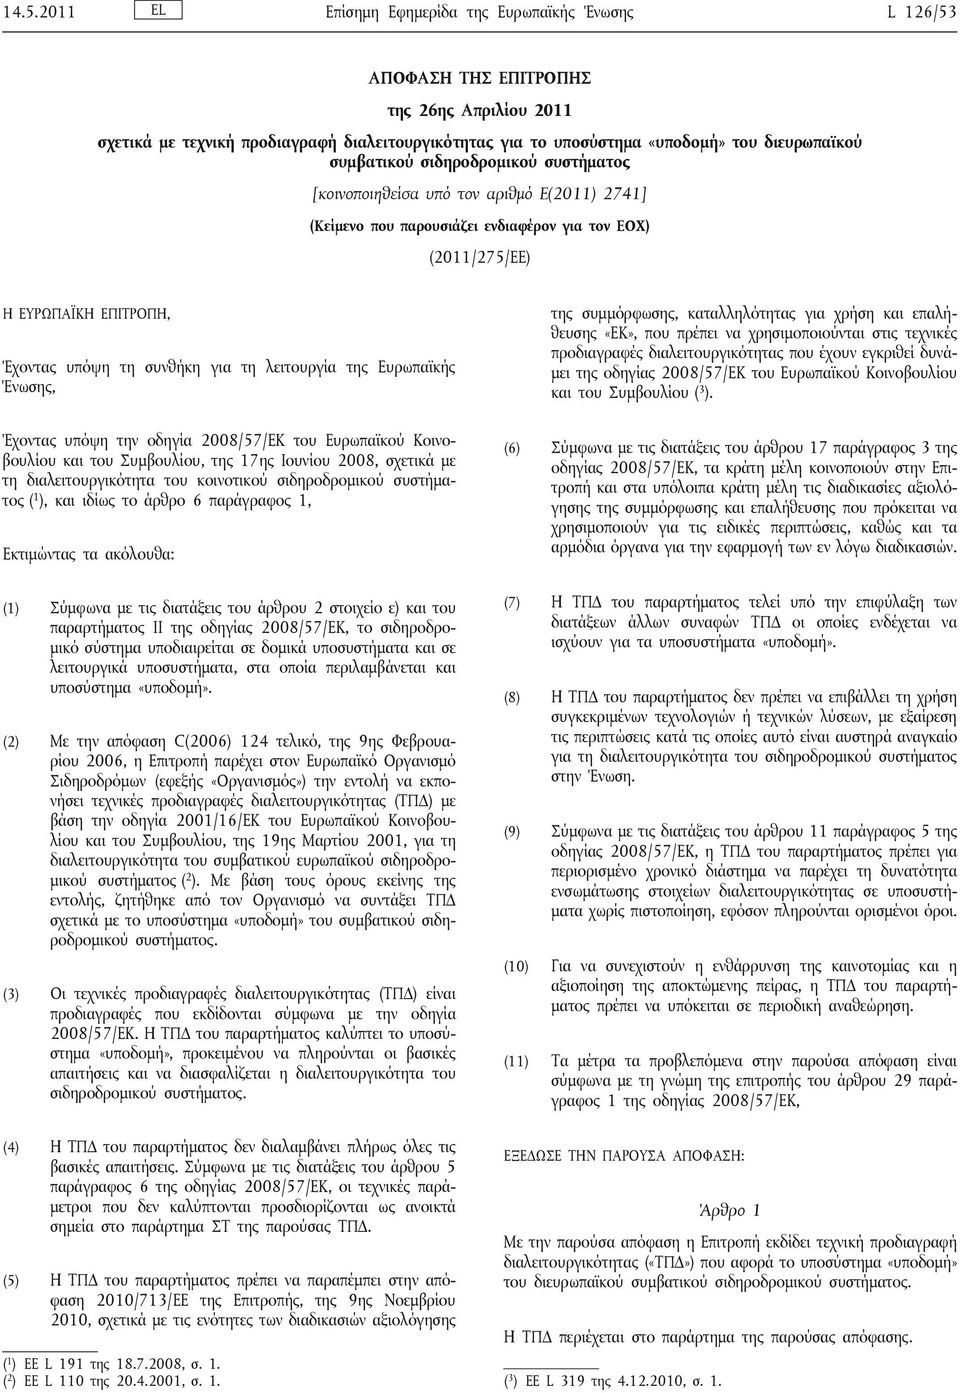 λειτουργία της Ευρωπαϊκής Ένωσης, Έχοντας υπόψη την οδηγία 2008/57/ΕΚ του Ευρωπαϊκού Κοινοβουλίου και του Συμβουλίου, της 17ης Ιουνίου 2008, σχετικά με τη διαλειτουργικότητα του κοινοτικού